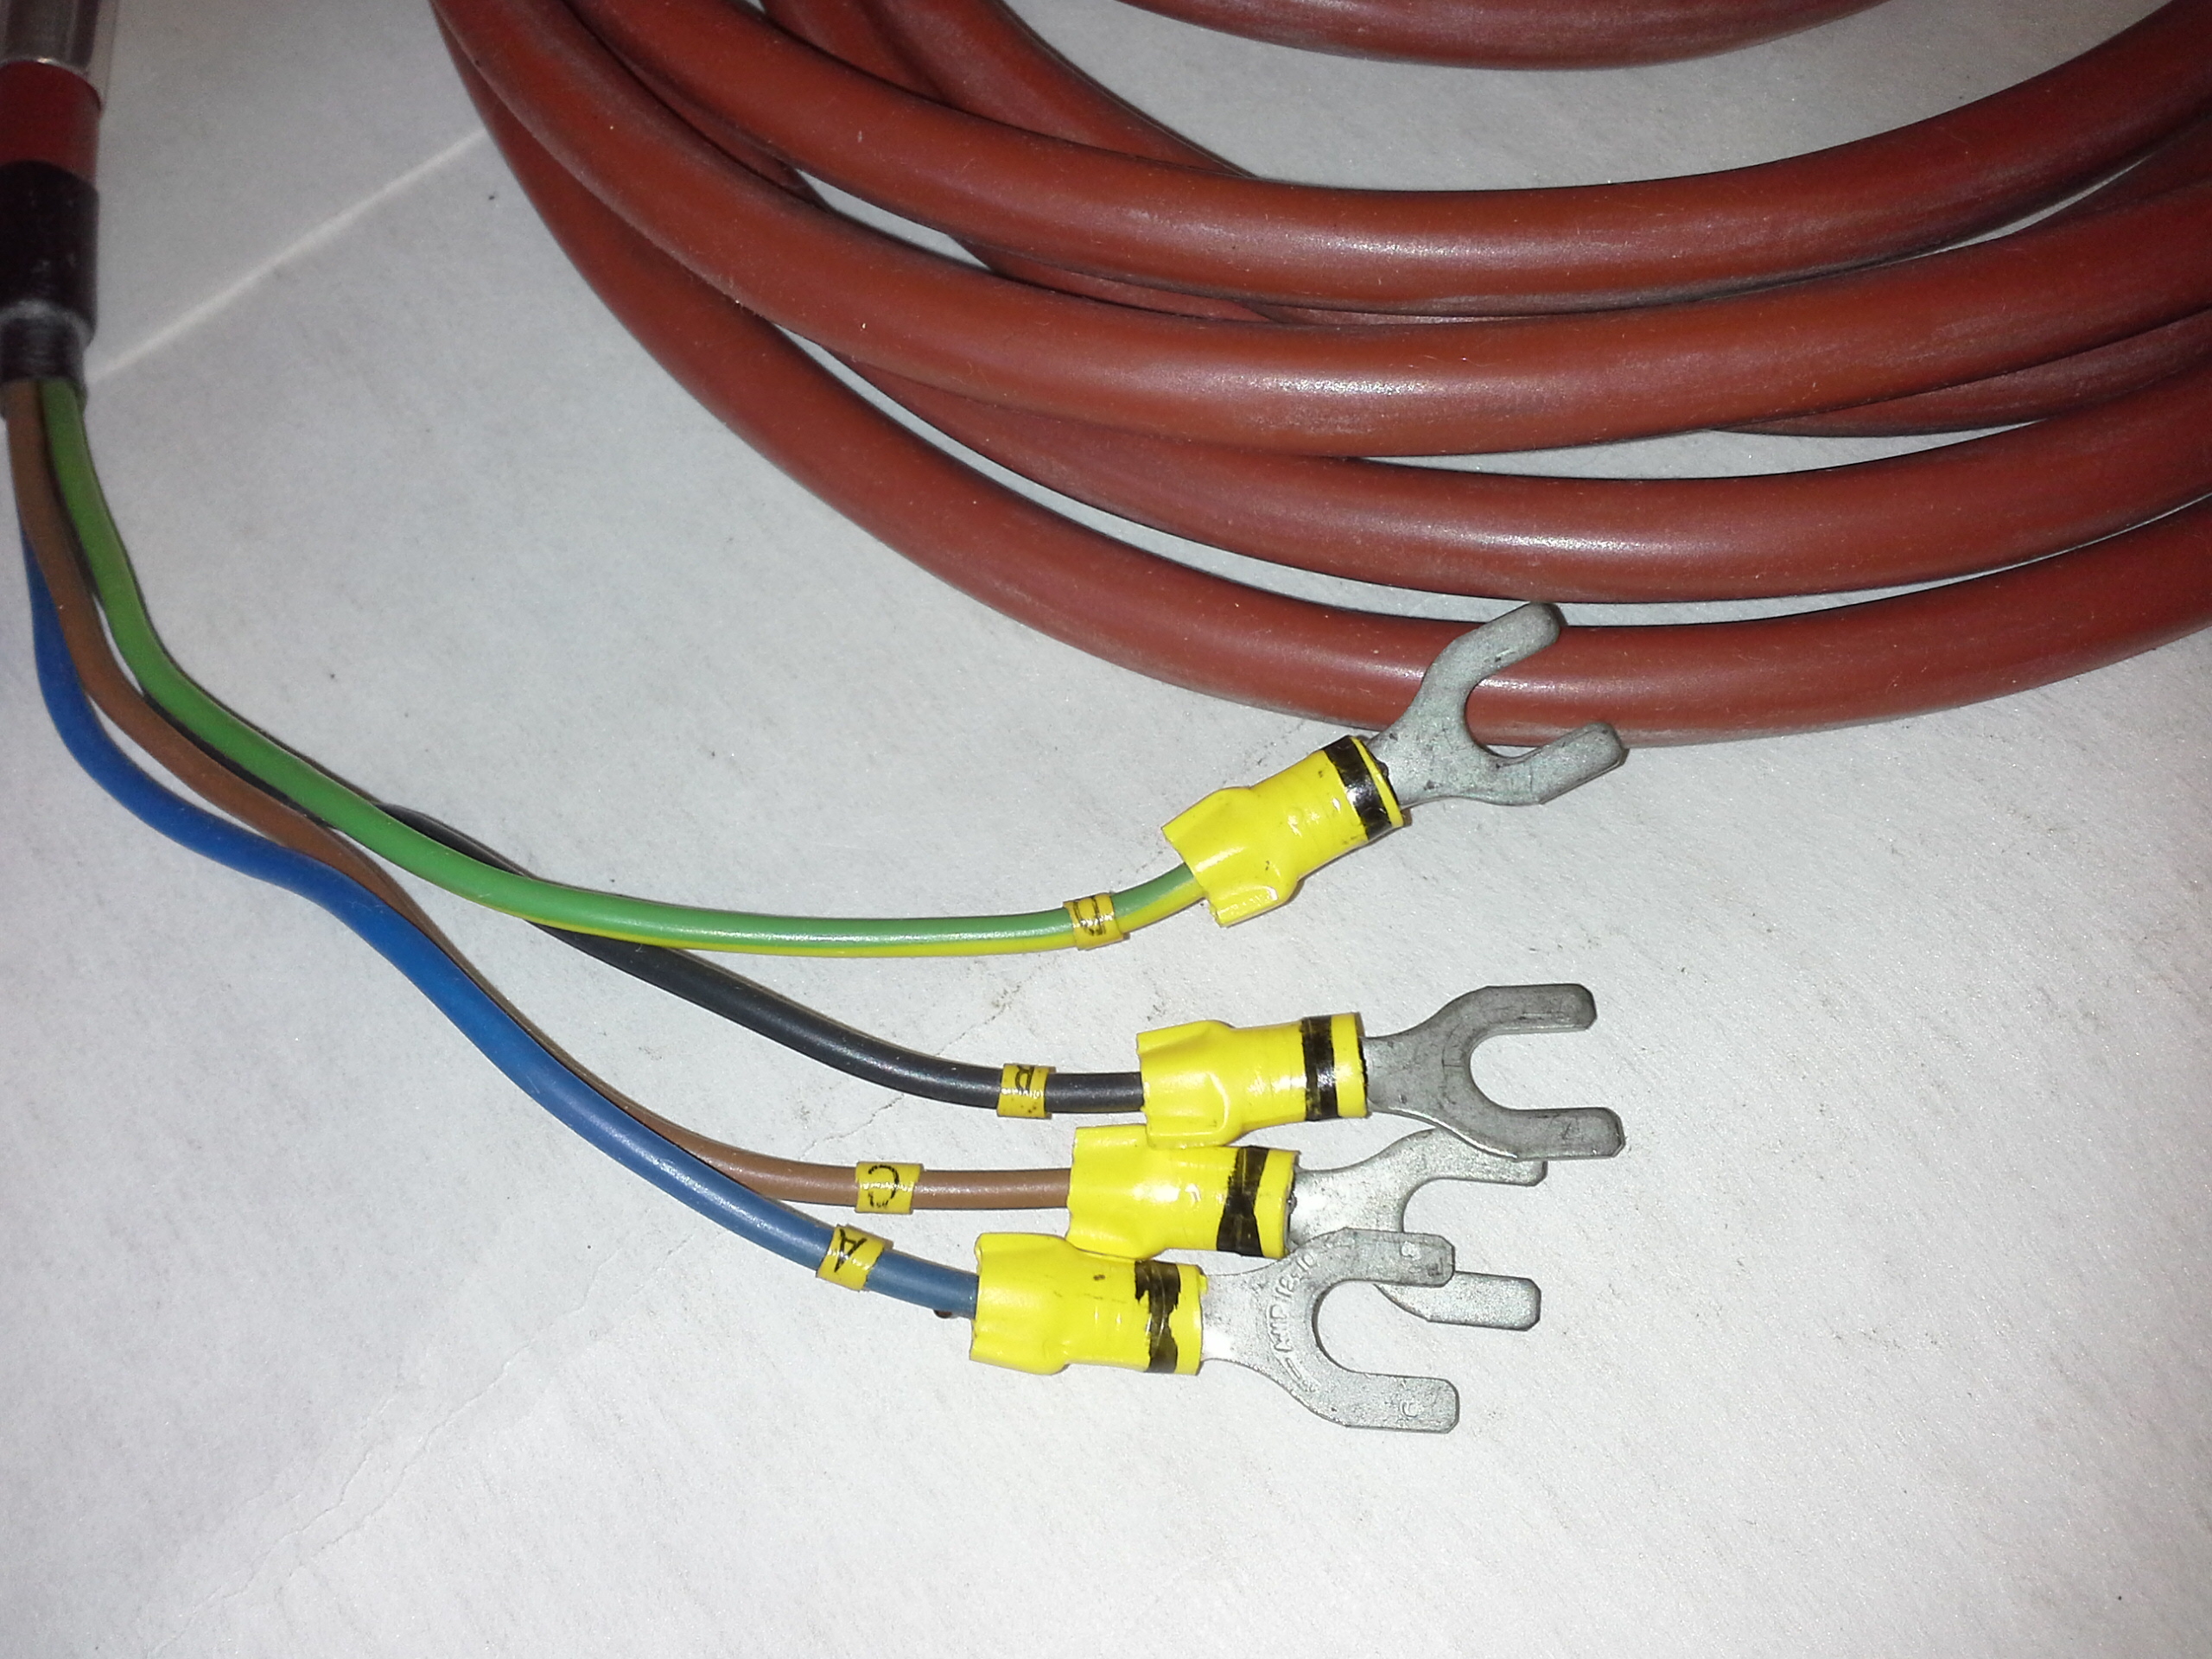 PKL 135-1 Kabel für Thermoelementmessung, Werkstatt